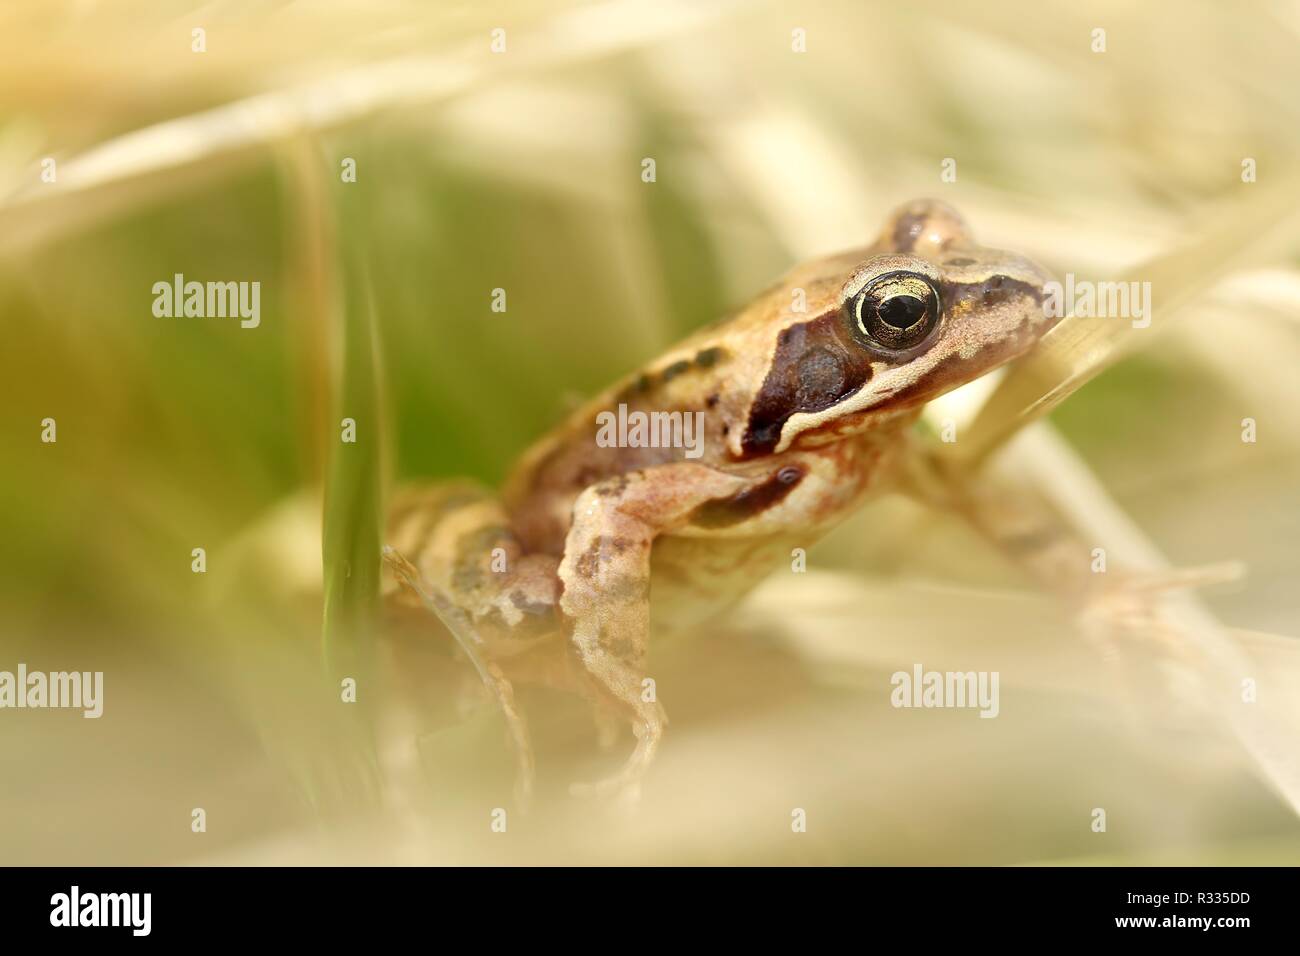 Weibliche Frosch/weiblich Grasfrosch Stockfotografie - Alamy